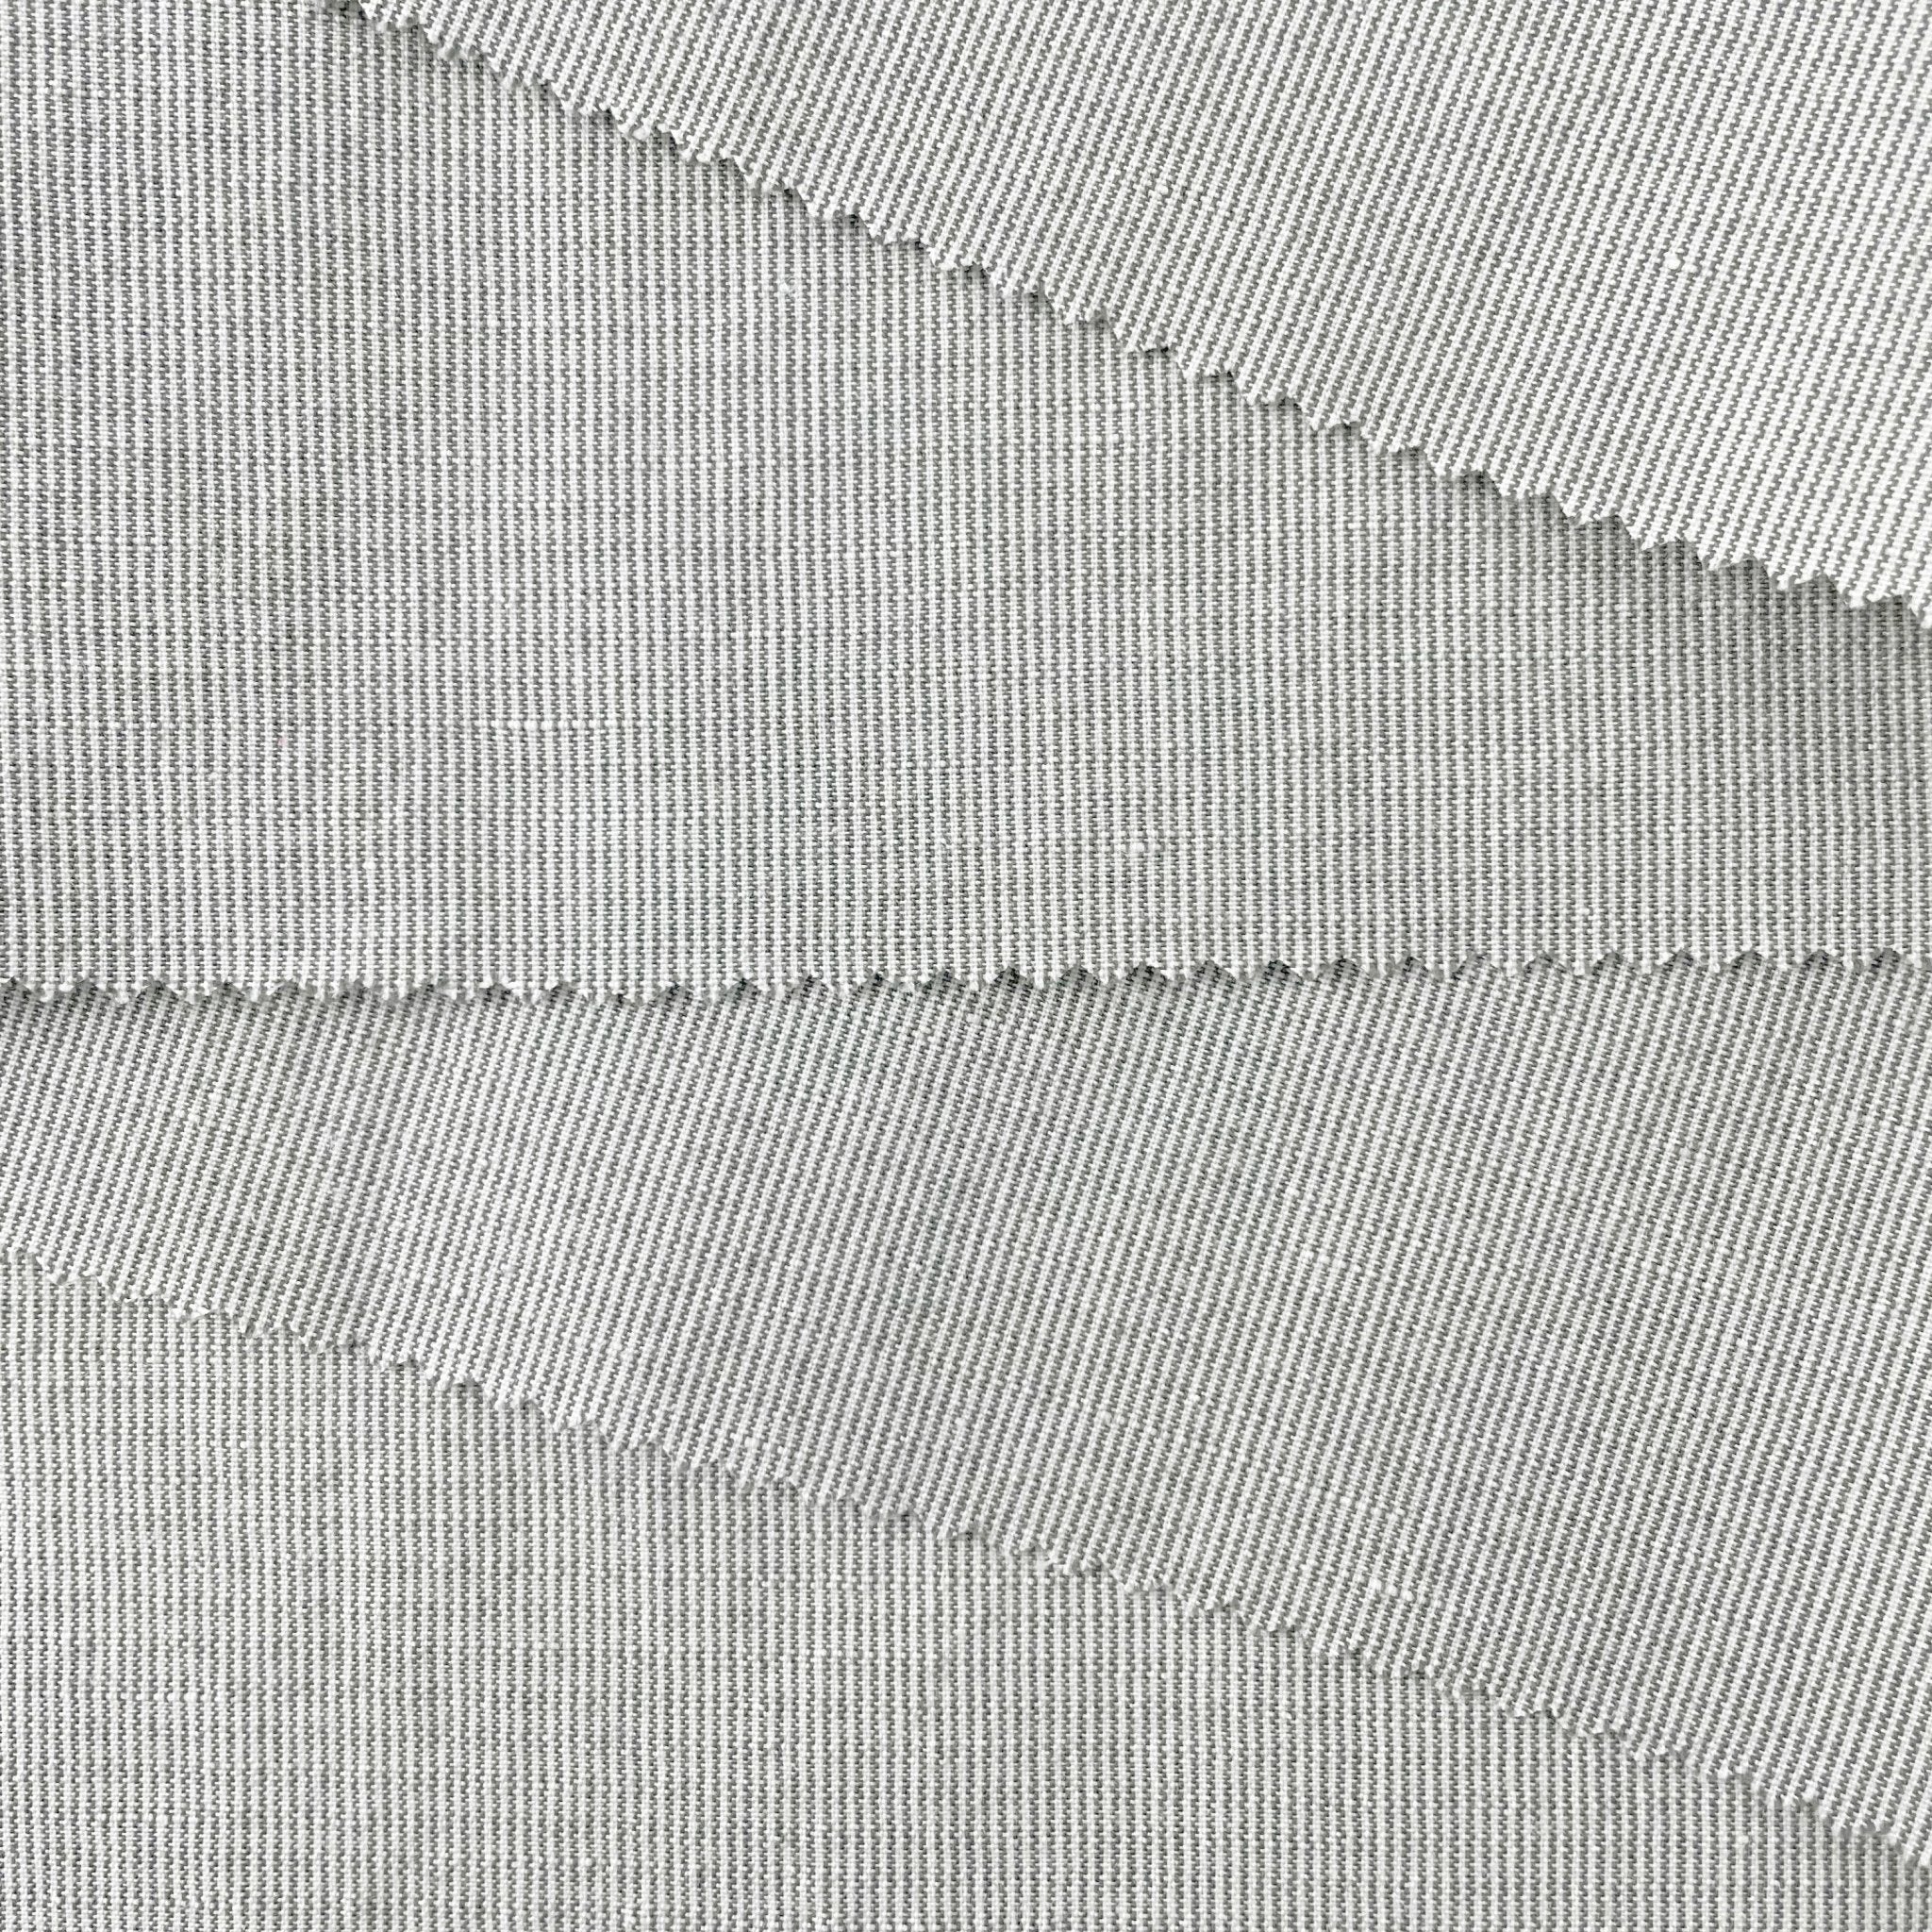 Linen Cotton Stripe Fabric 7087 7088 - The Linen Lab - 7087 BEIGE